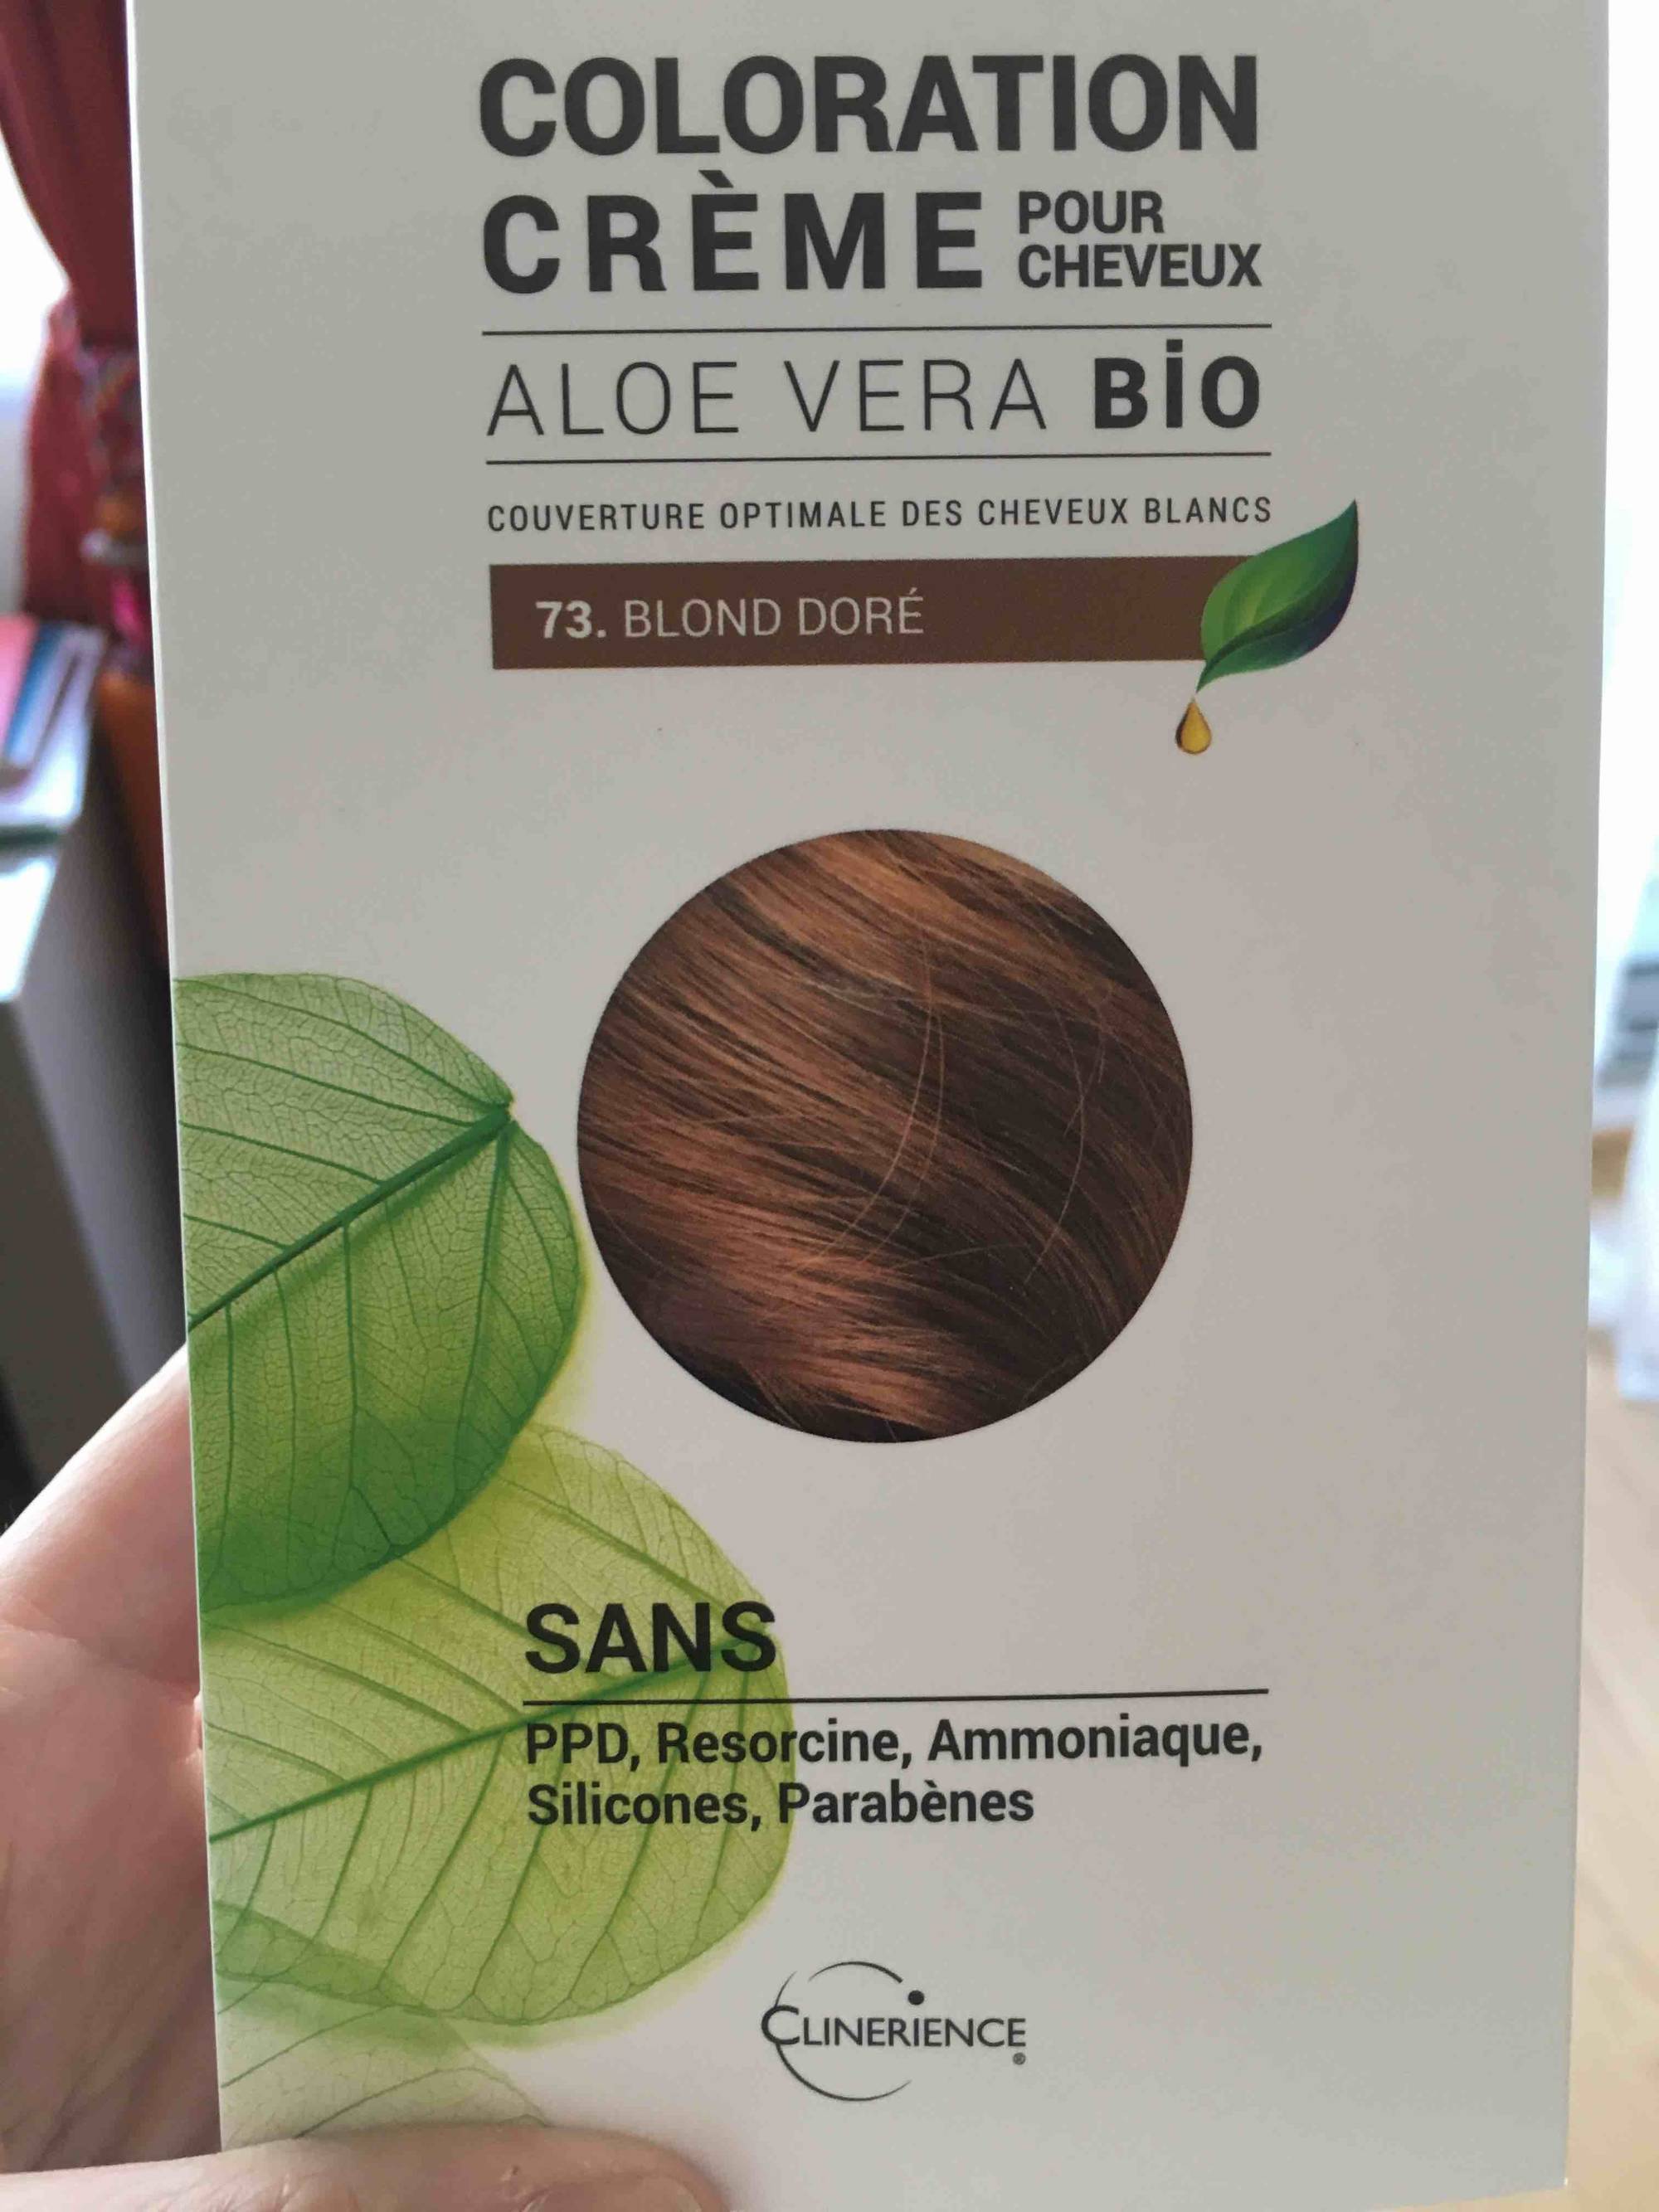 CLINERIENCE - Aloe vera bio - Coloration crème pour cheveux 73 blond doré